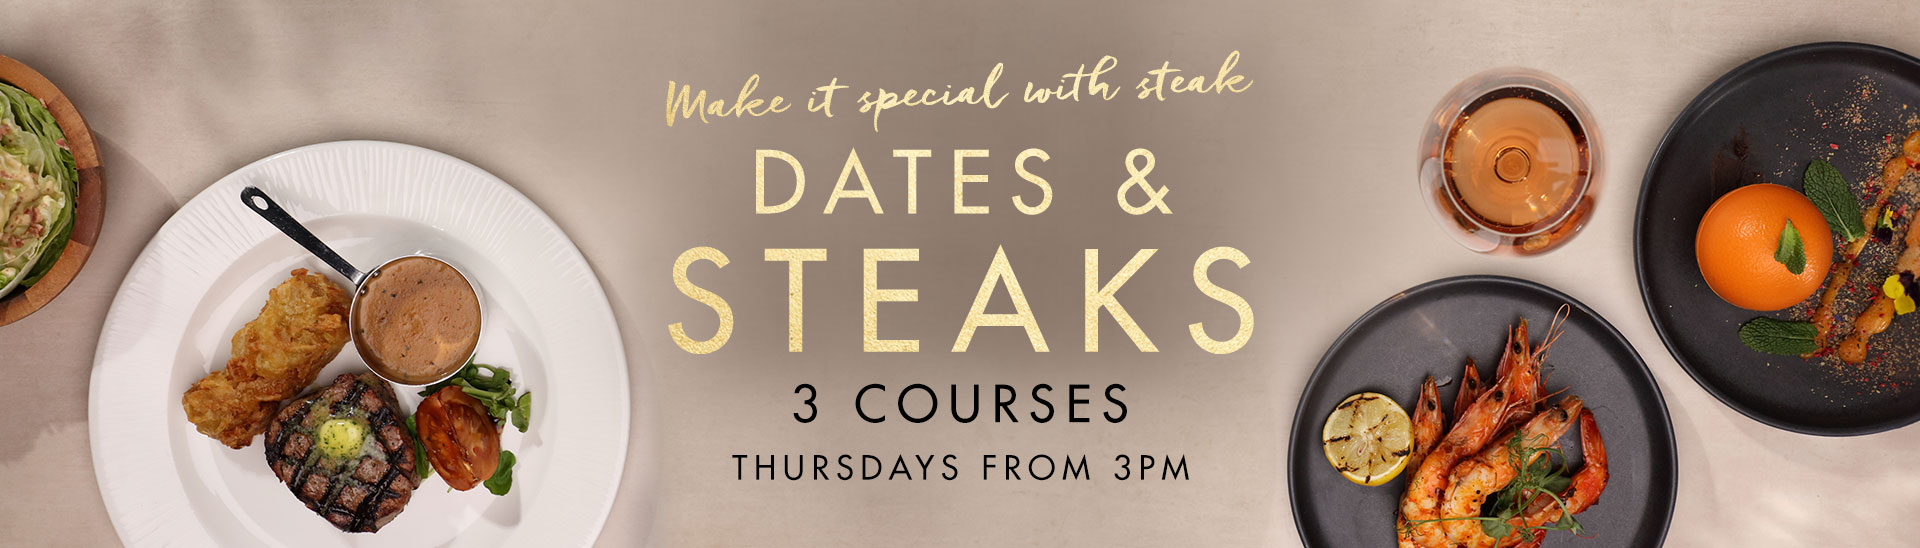 Dates & Steaks at Miller & Carter Basingstoke